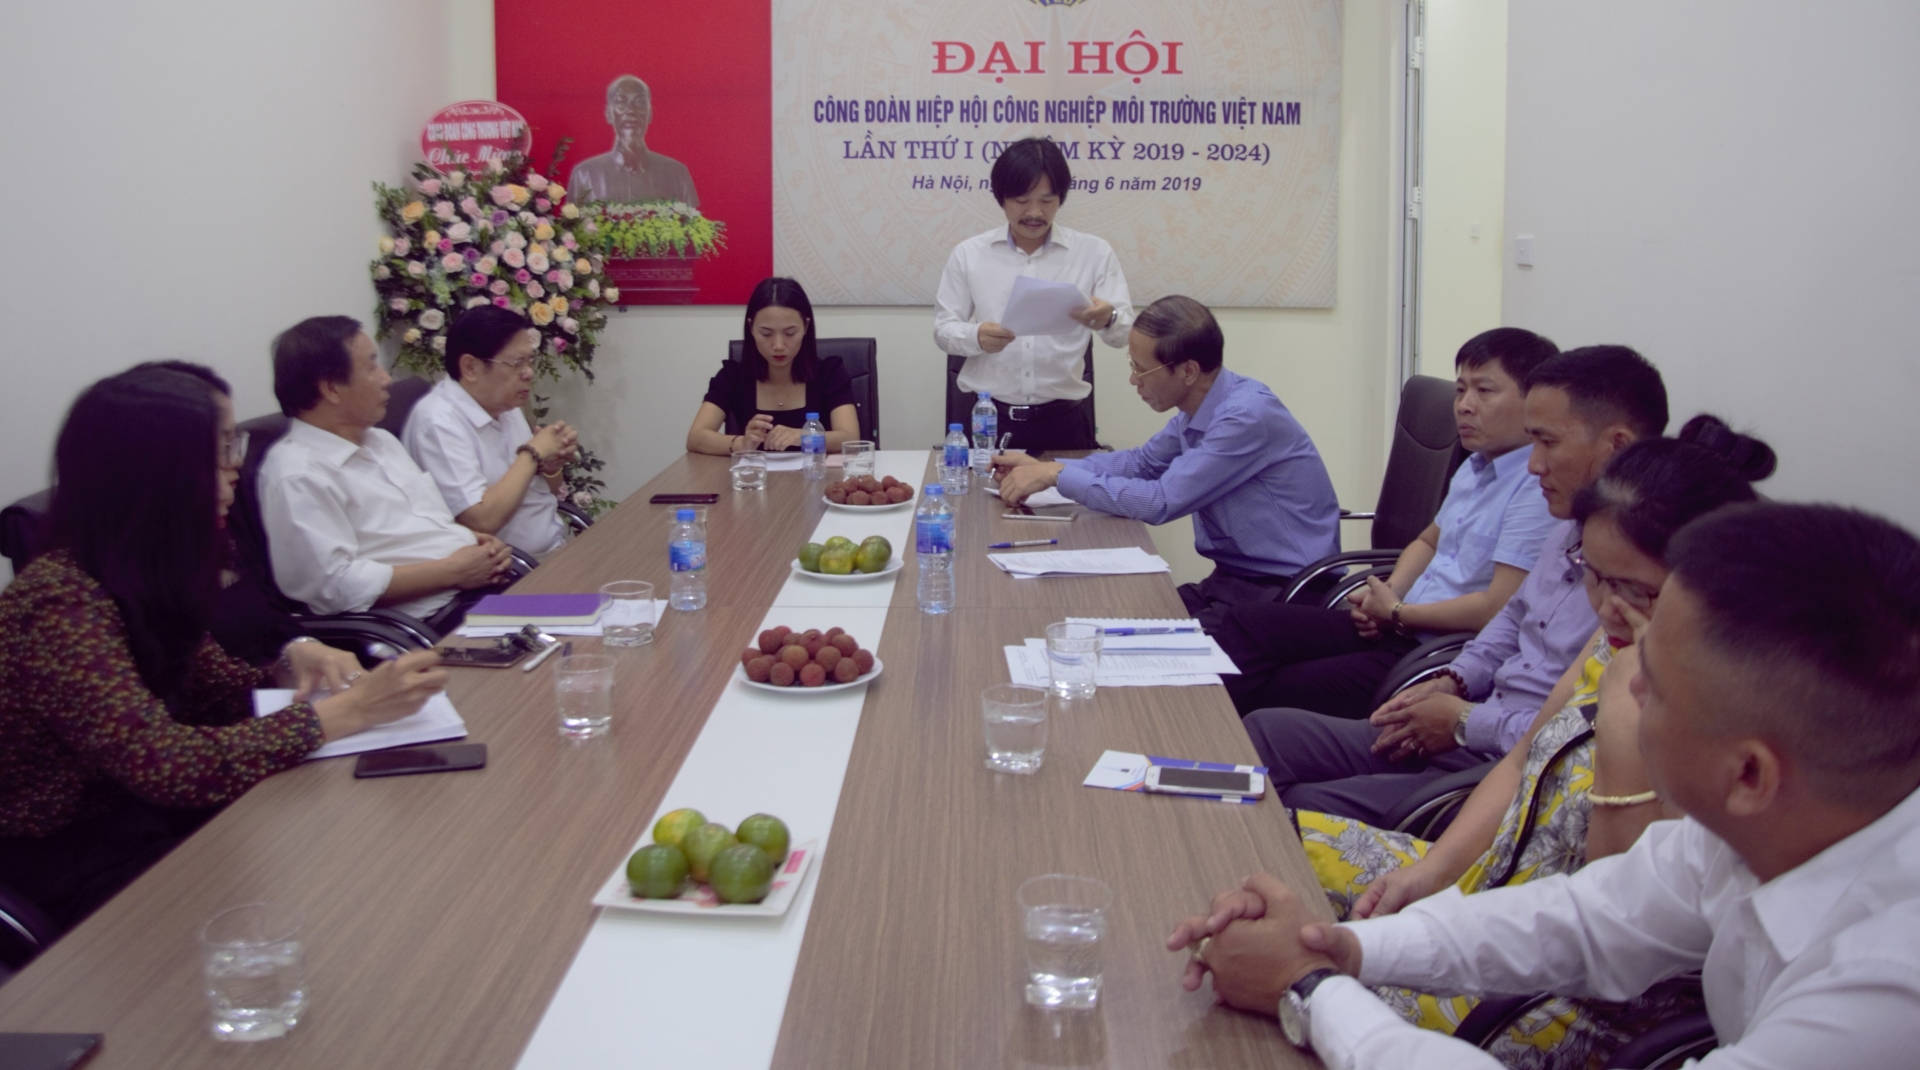 Tổ chức thành công ĐHCĐ Hiệp hội Công nghiệp môi trường Việt Nam